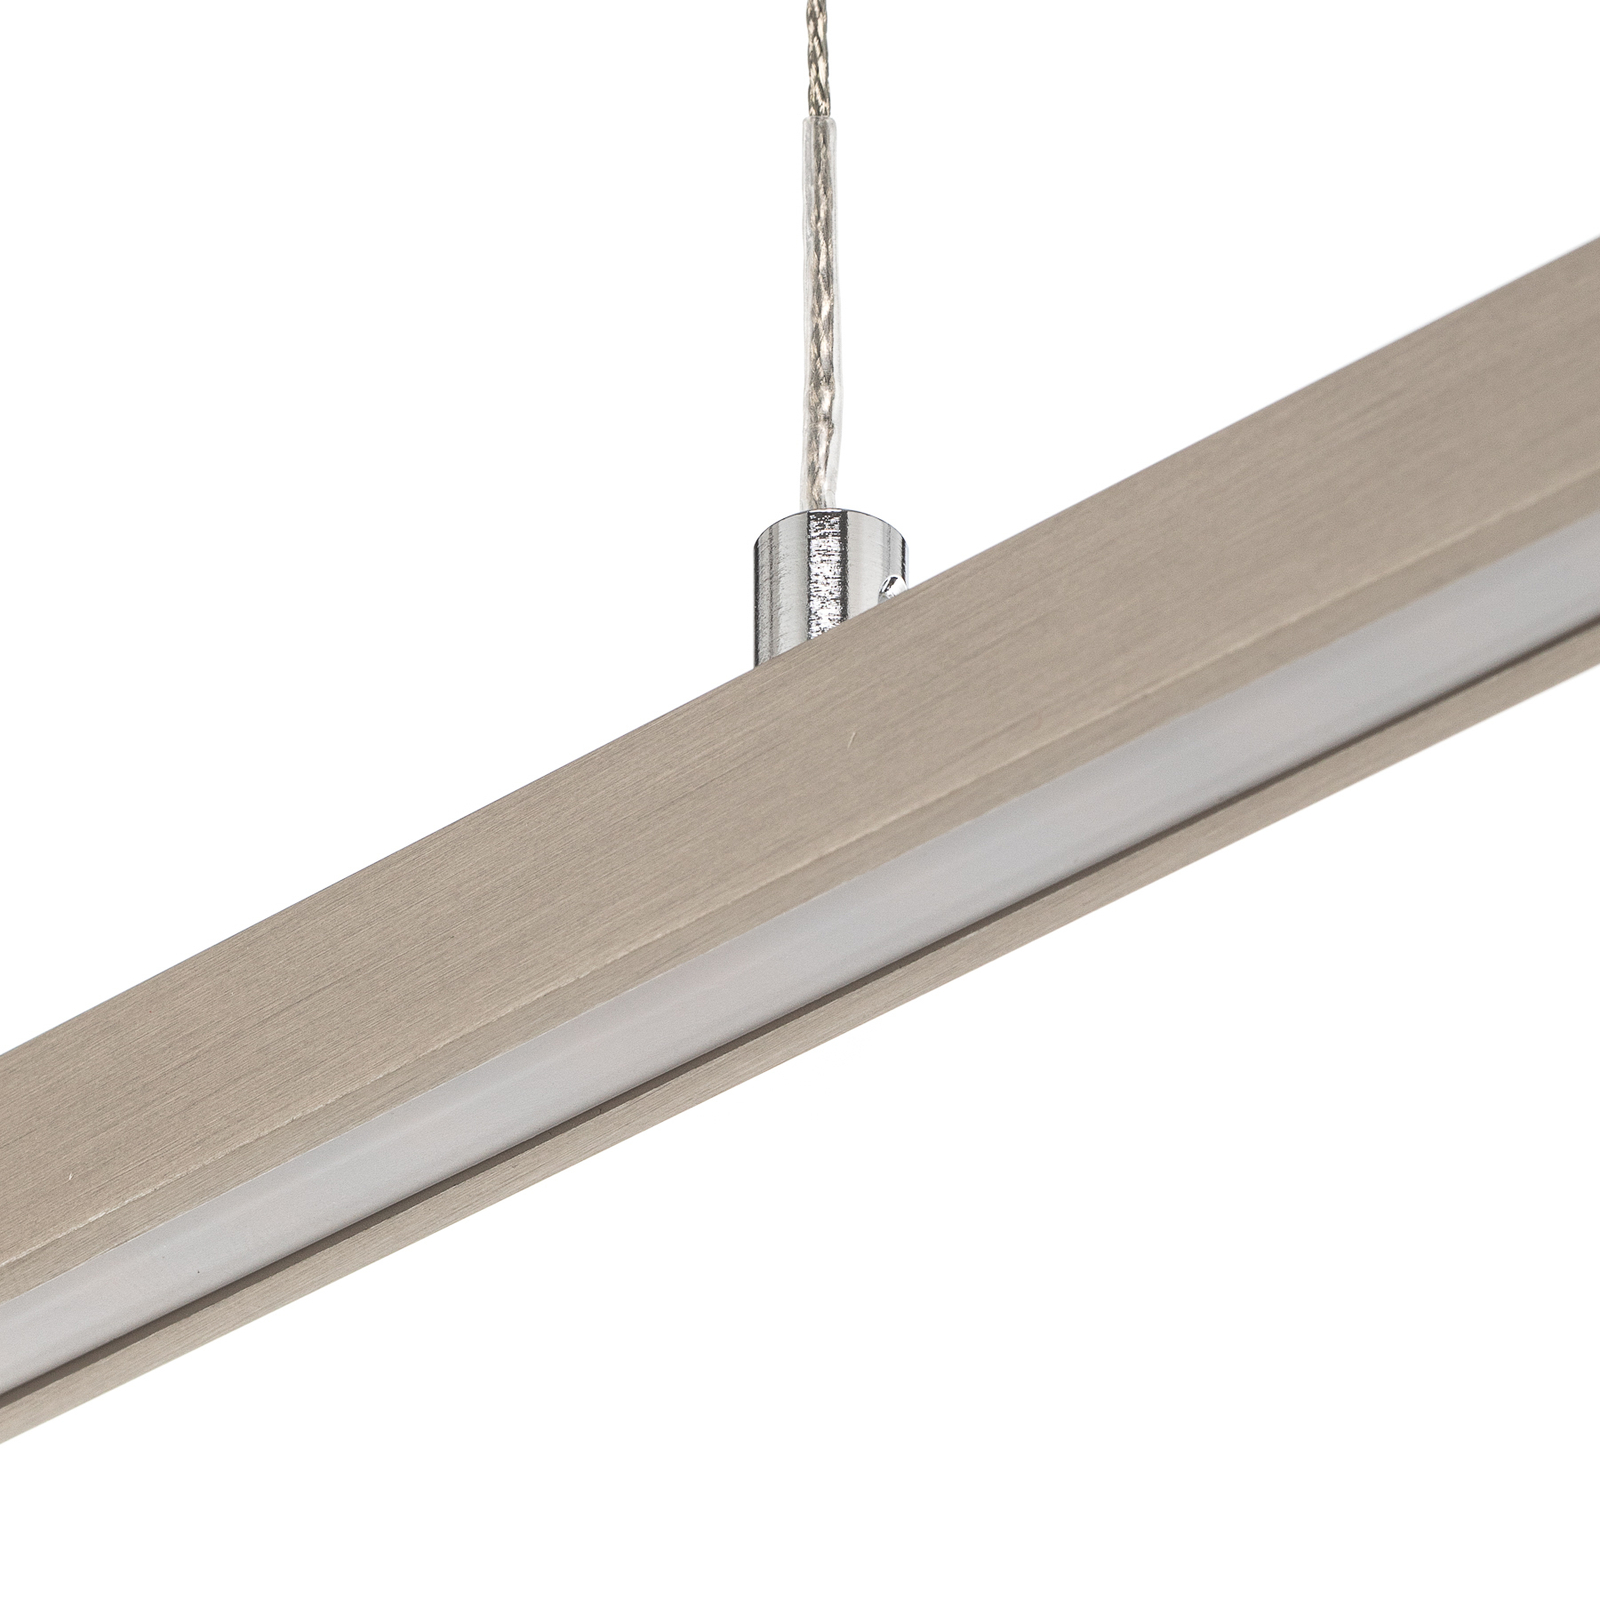 Quitani hanglamp Tolu, nikkel, lengte 118 cm